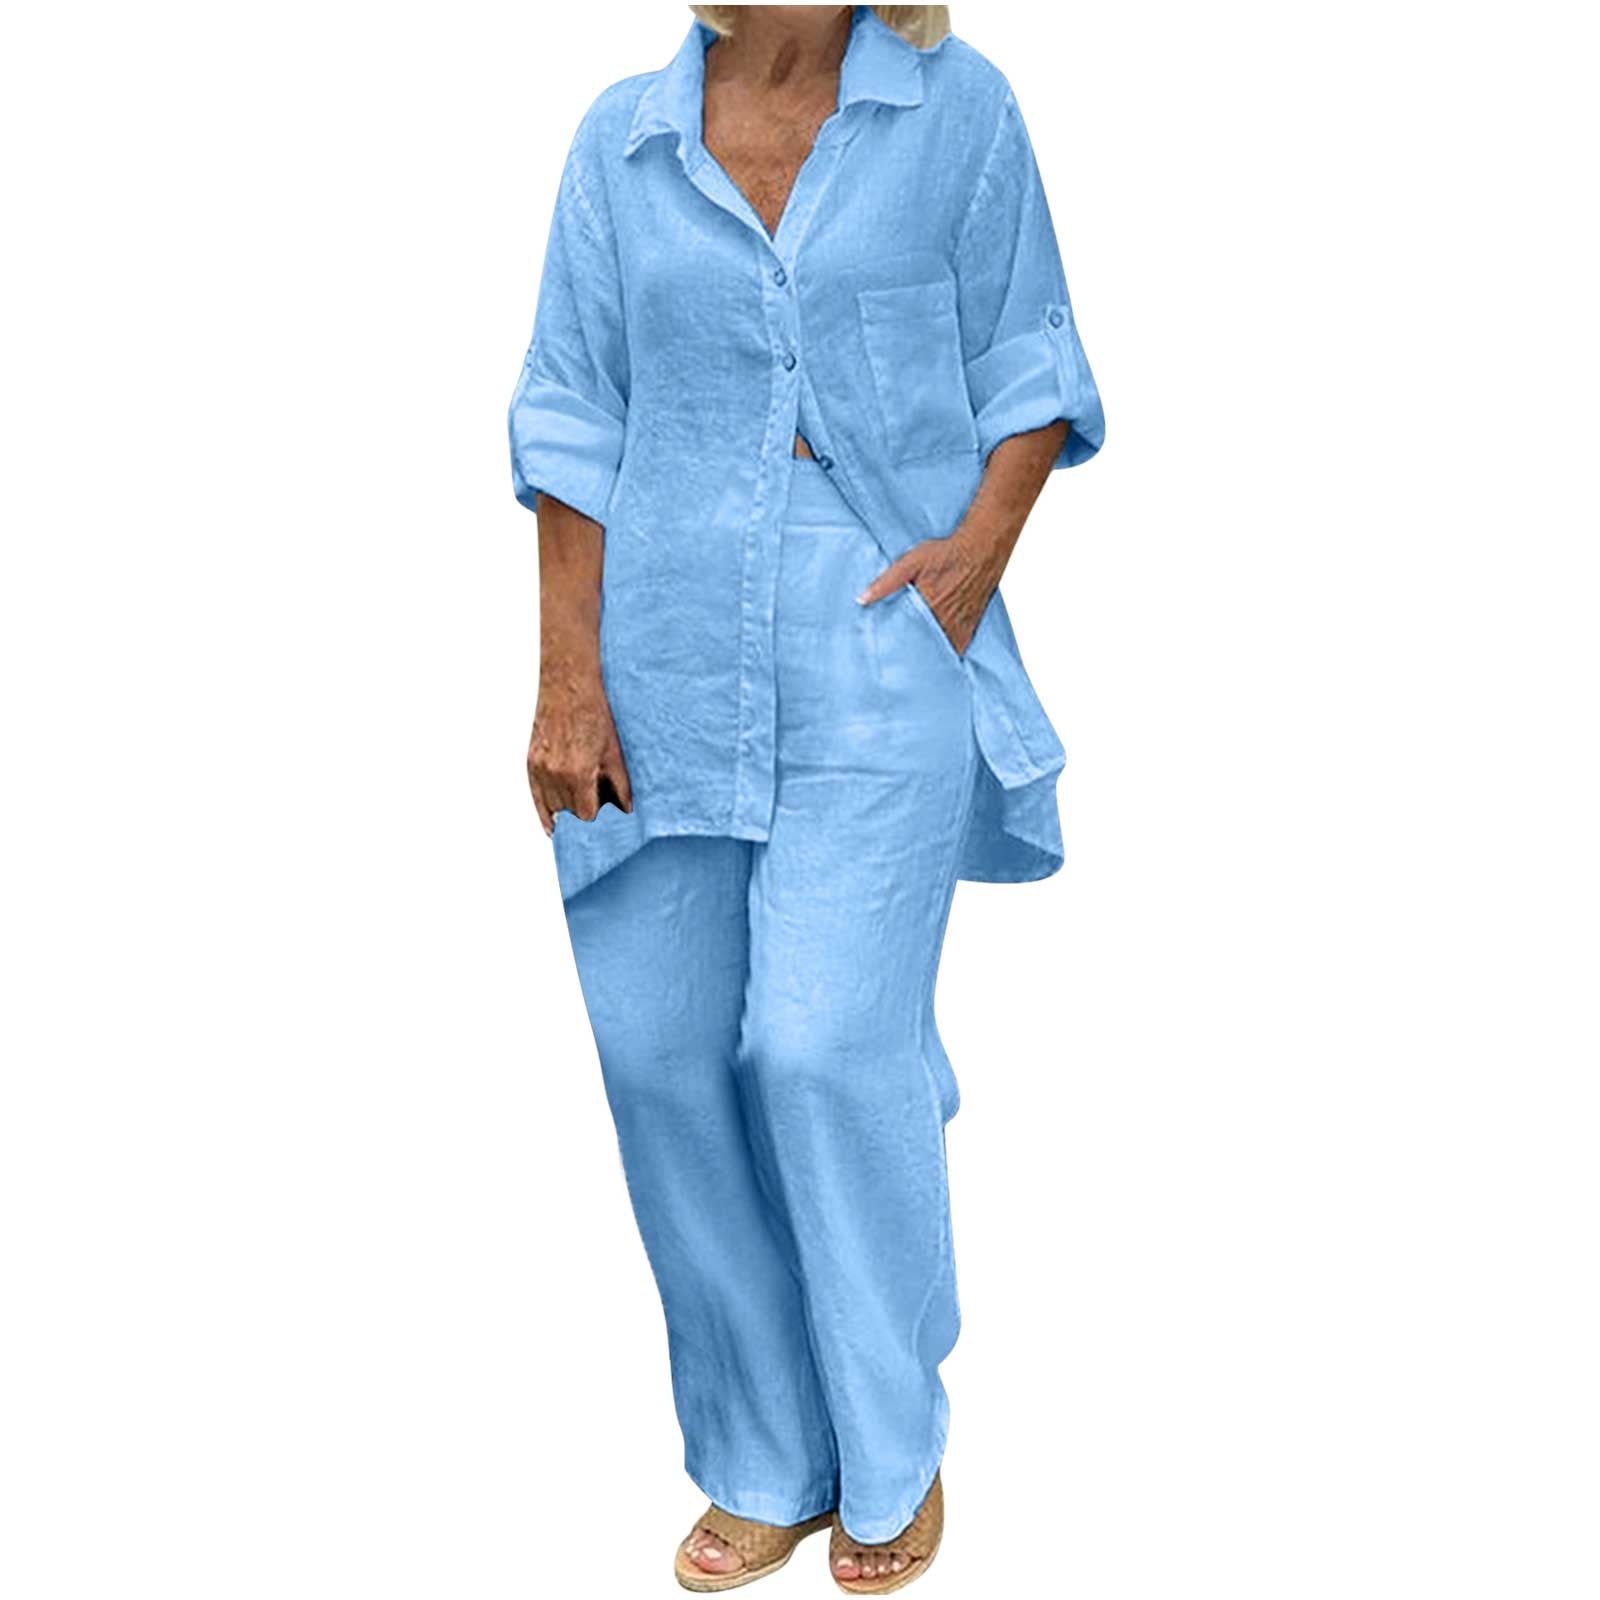 FchengtaiS Summer Cotton Linen Piece Outfits For Women, 49% OFF